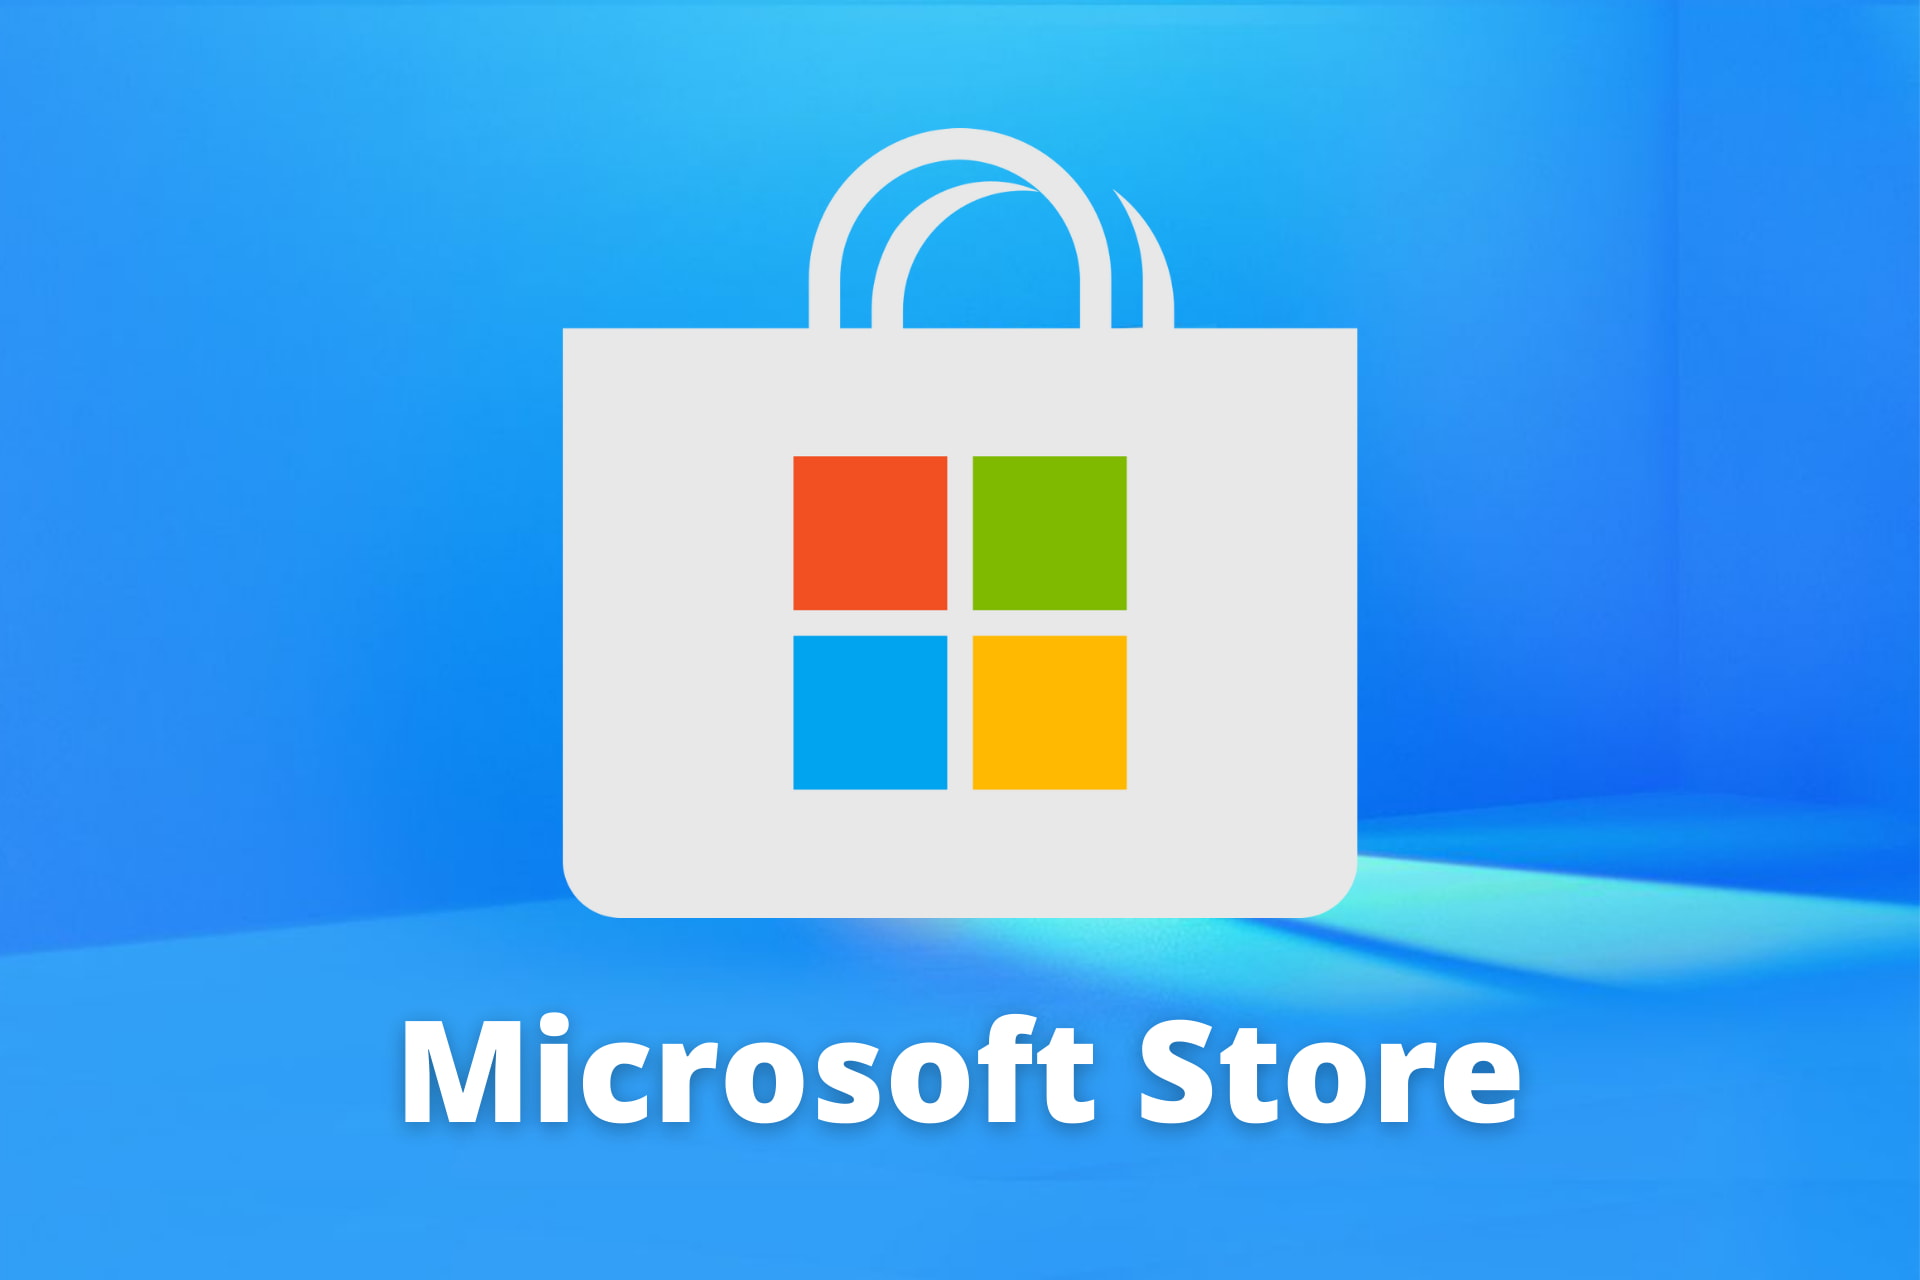 Microsoft Store comprado hace unos momentos